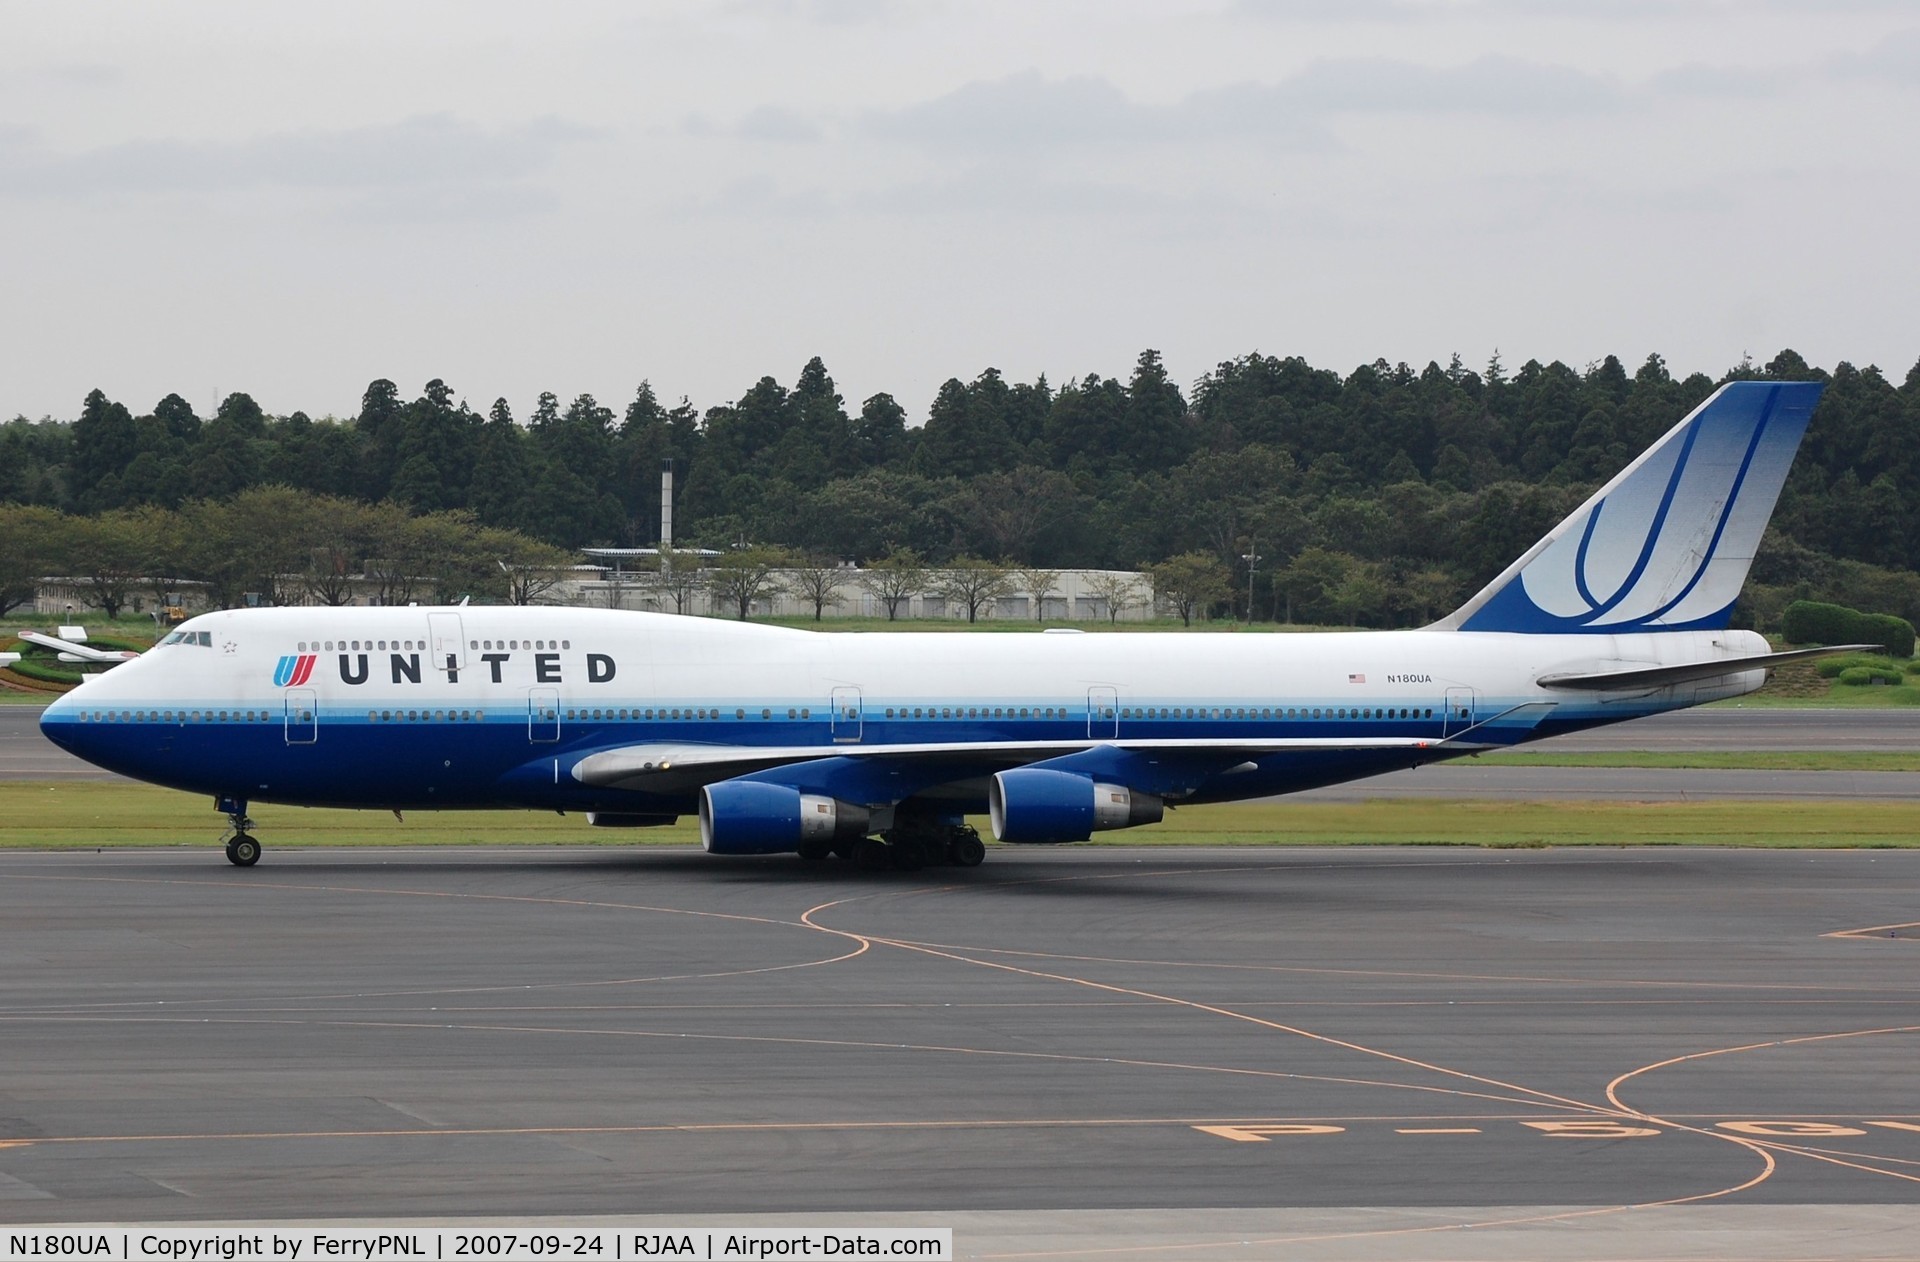 N180UA, 1991 Boeing 747-422 C/N 25224, United B744, airframe stored at VCV in 2017.